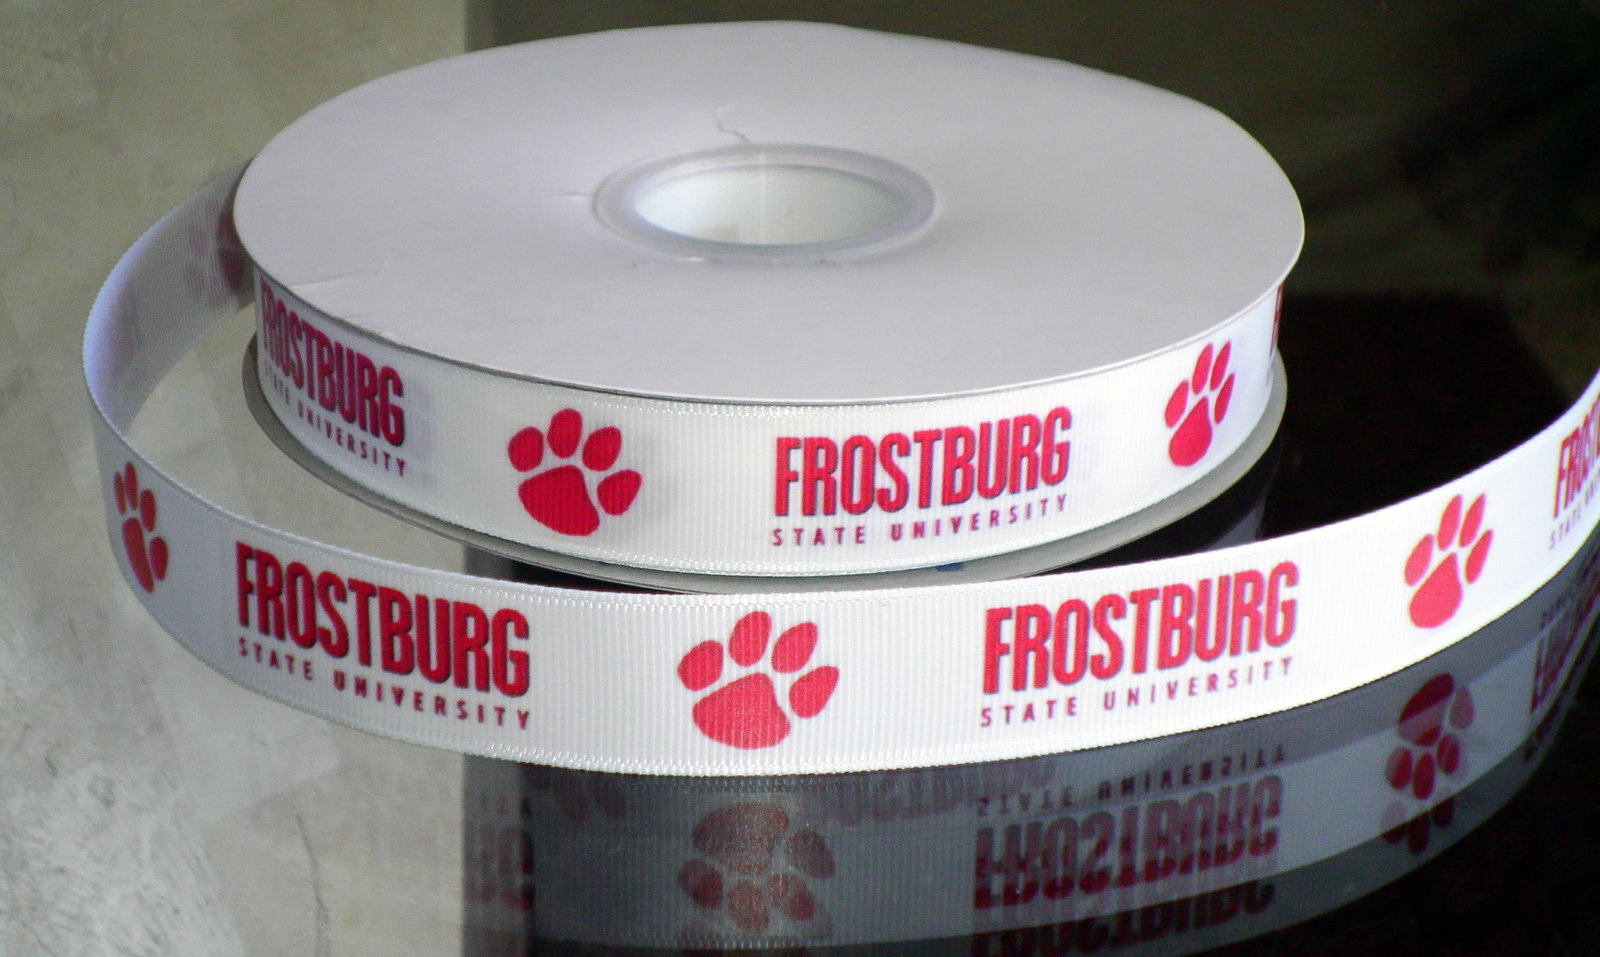 Frostburg State University Inspired Grosgrain Ribbon